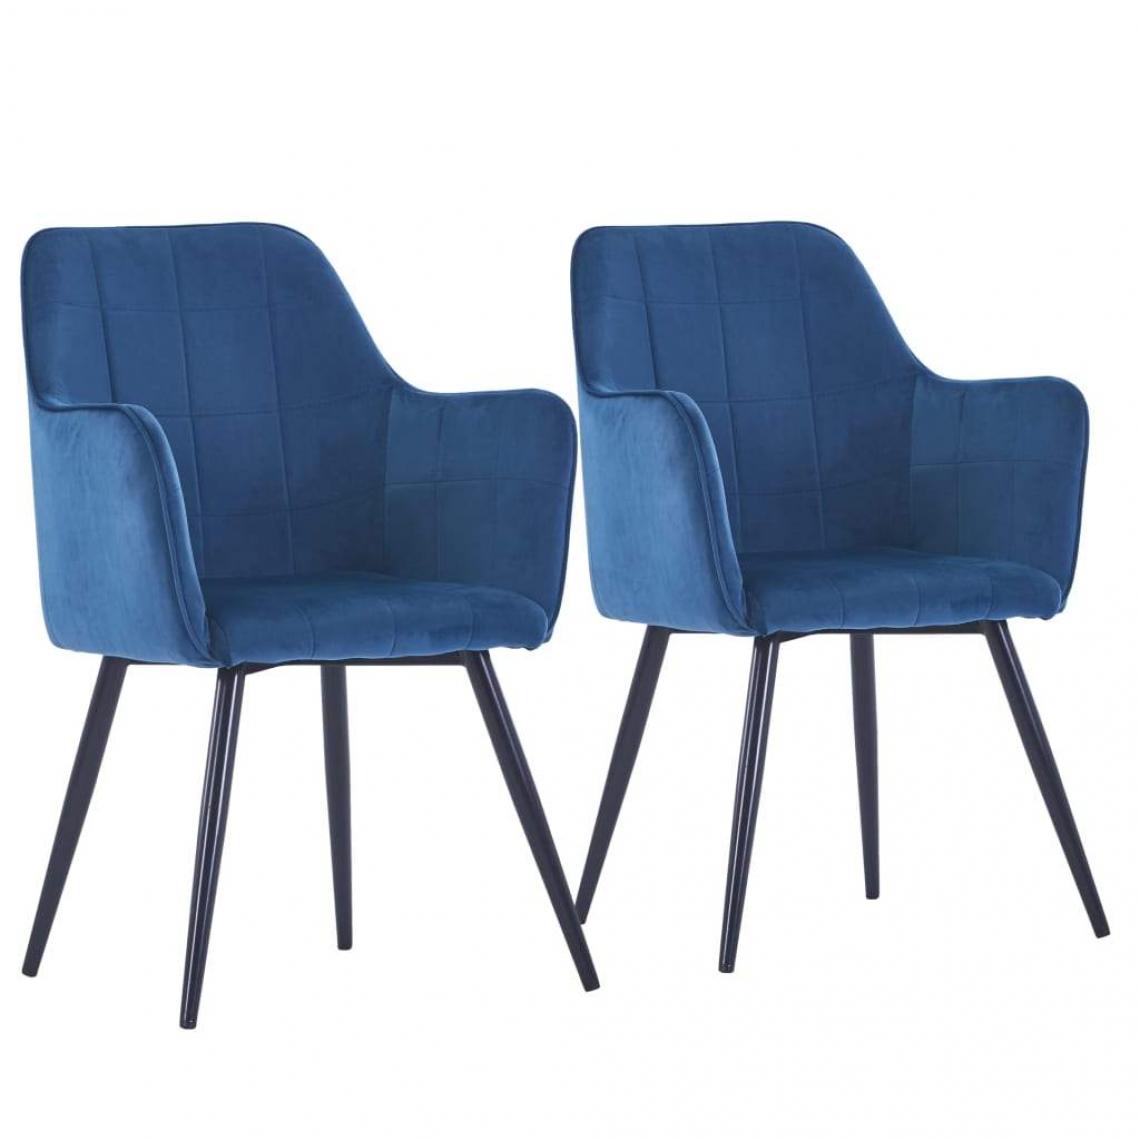 Decoshop26 - Lot de 2 chaises de salle à manger cuisine design moderne velours bleu CDS020266 - Chaises